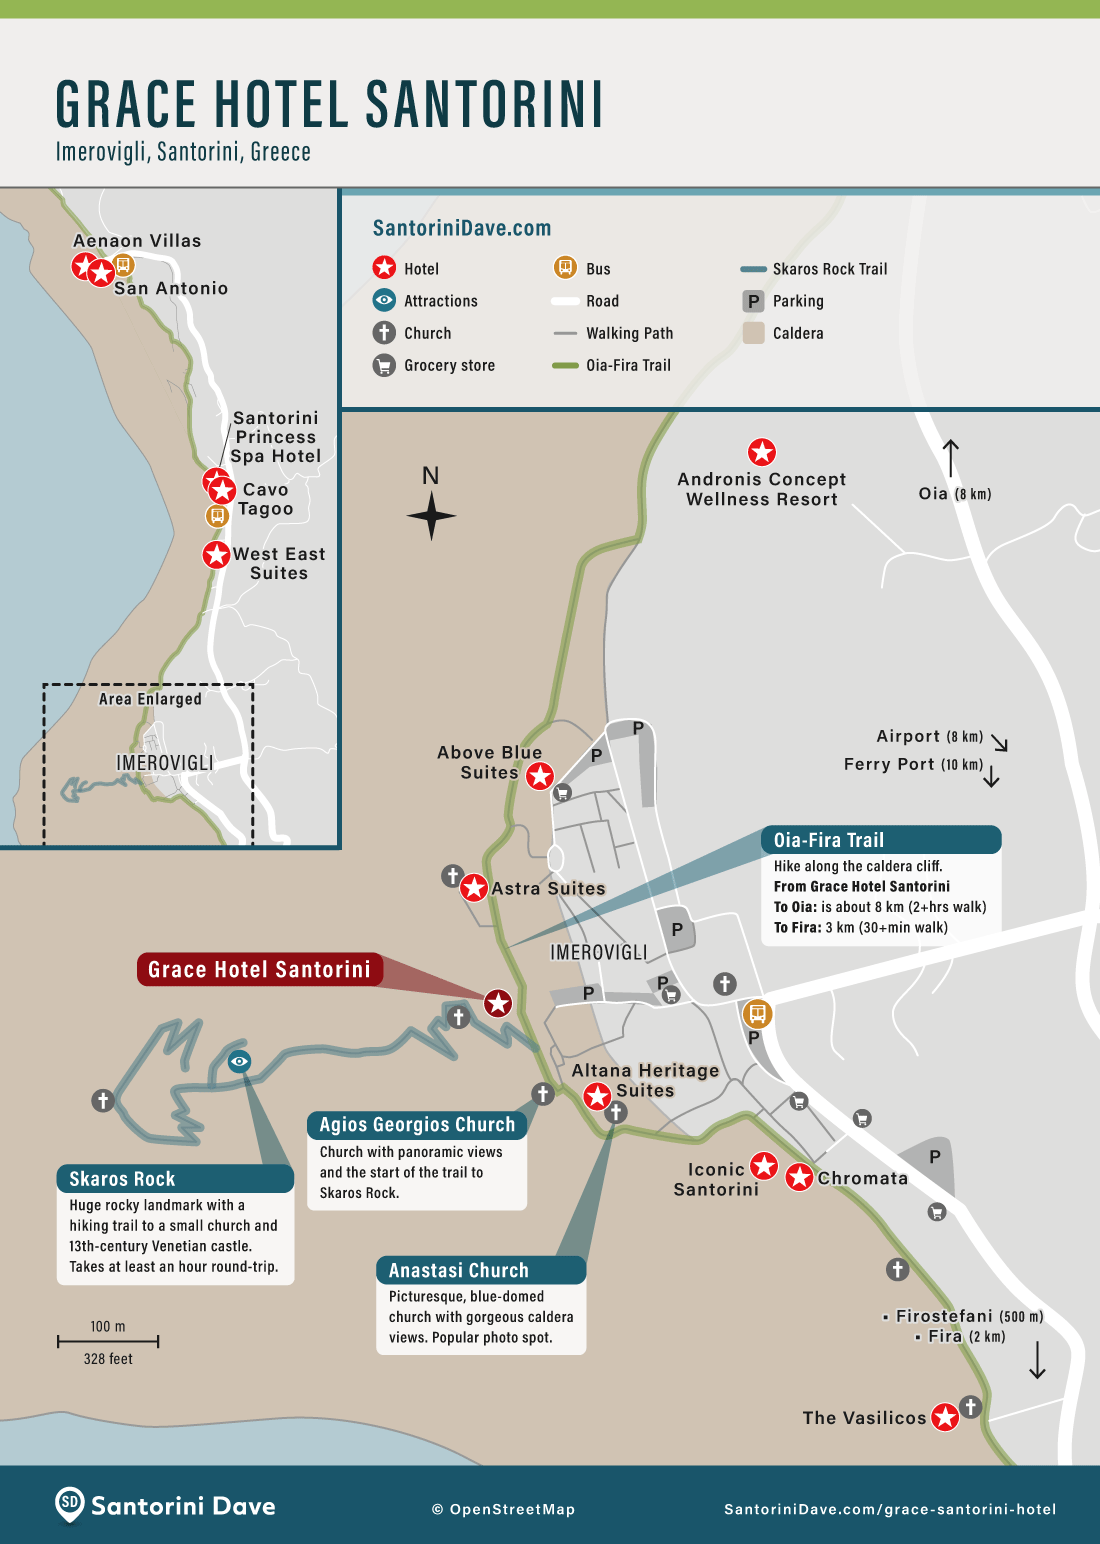 Map of Grace Santorini Hotel in Imerovigli.